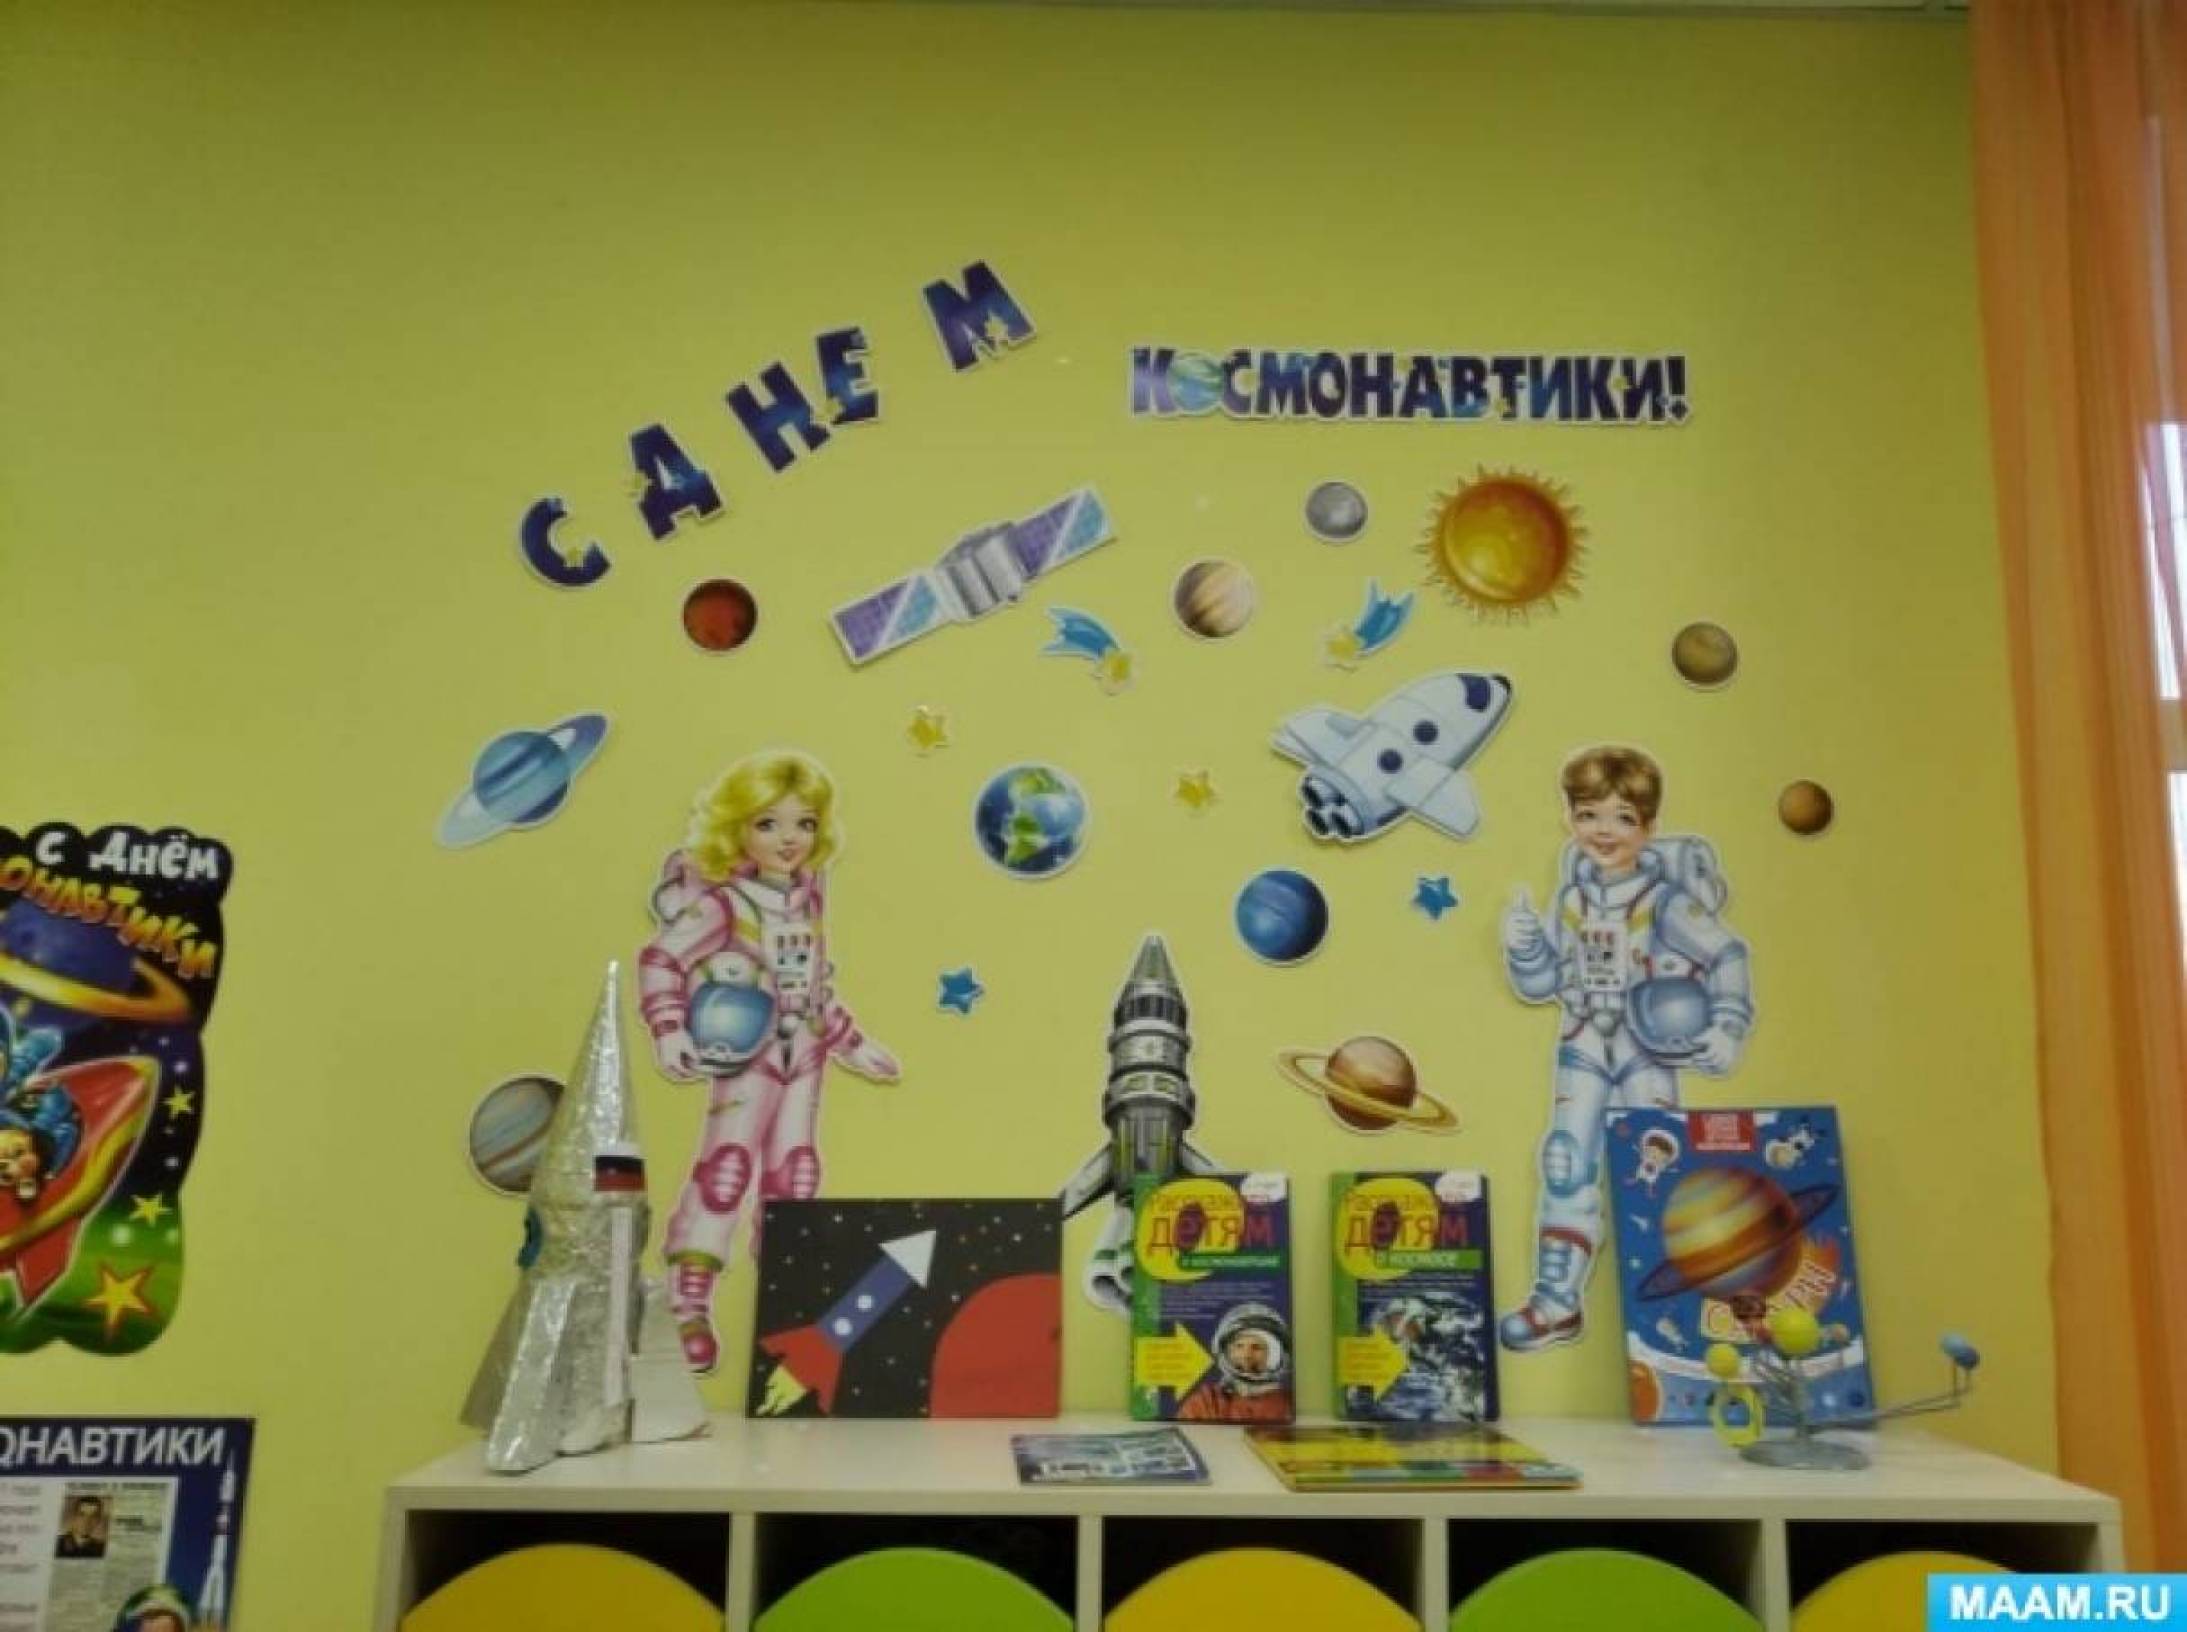 Оформление зала день космонавтики в детском саду. Украшение приемной ко Дню космонавтики в детском саду. Украшение группы ко Дню космонавтики. Оформление ко Дню космонавтики в детском саду. Украшение группы ко Дню космонавтики в детском саду.